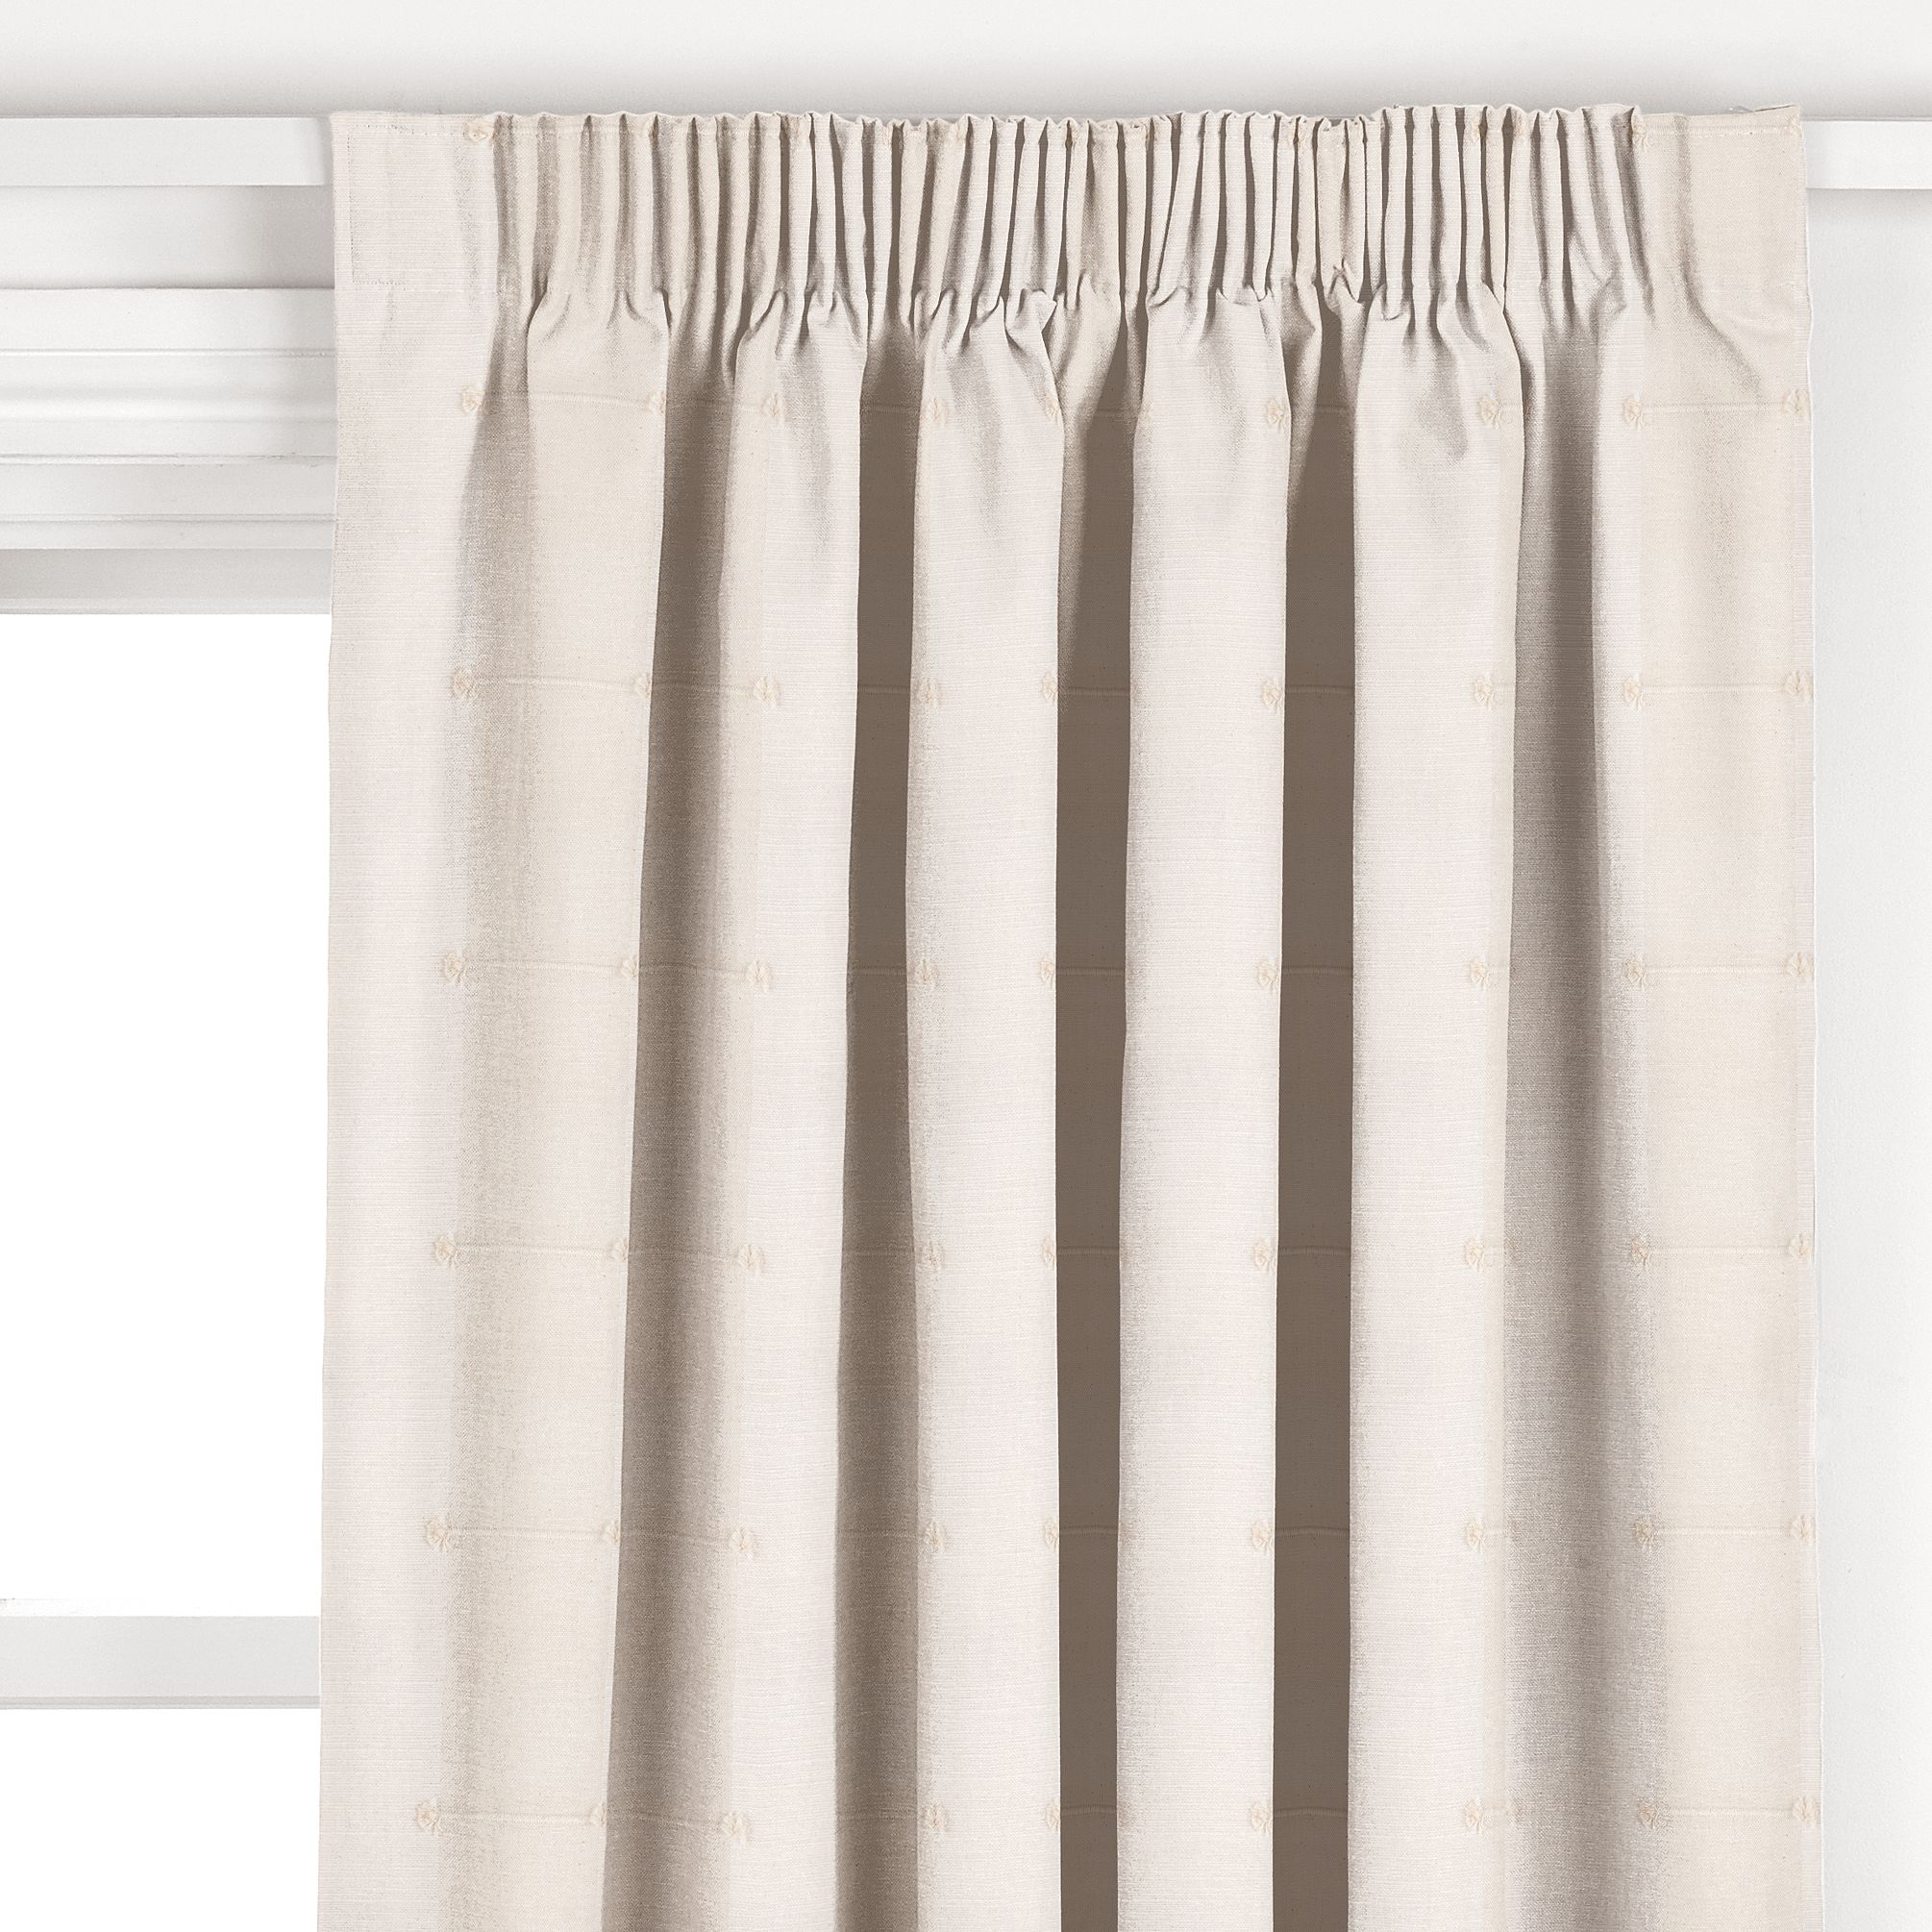 John Lewis Sierra Pencil Pleat Curtains, Natural, W167cm x